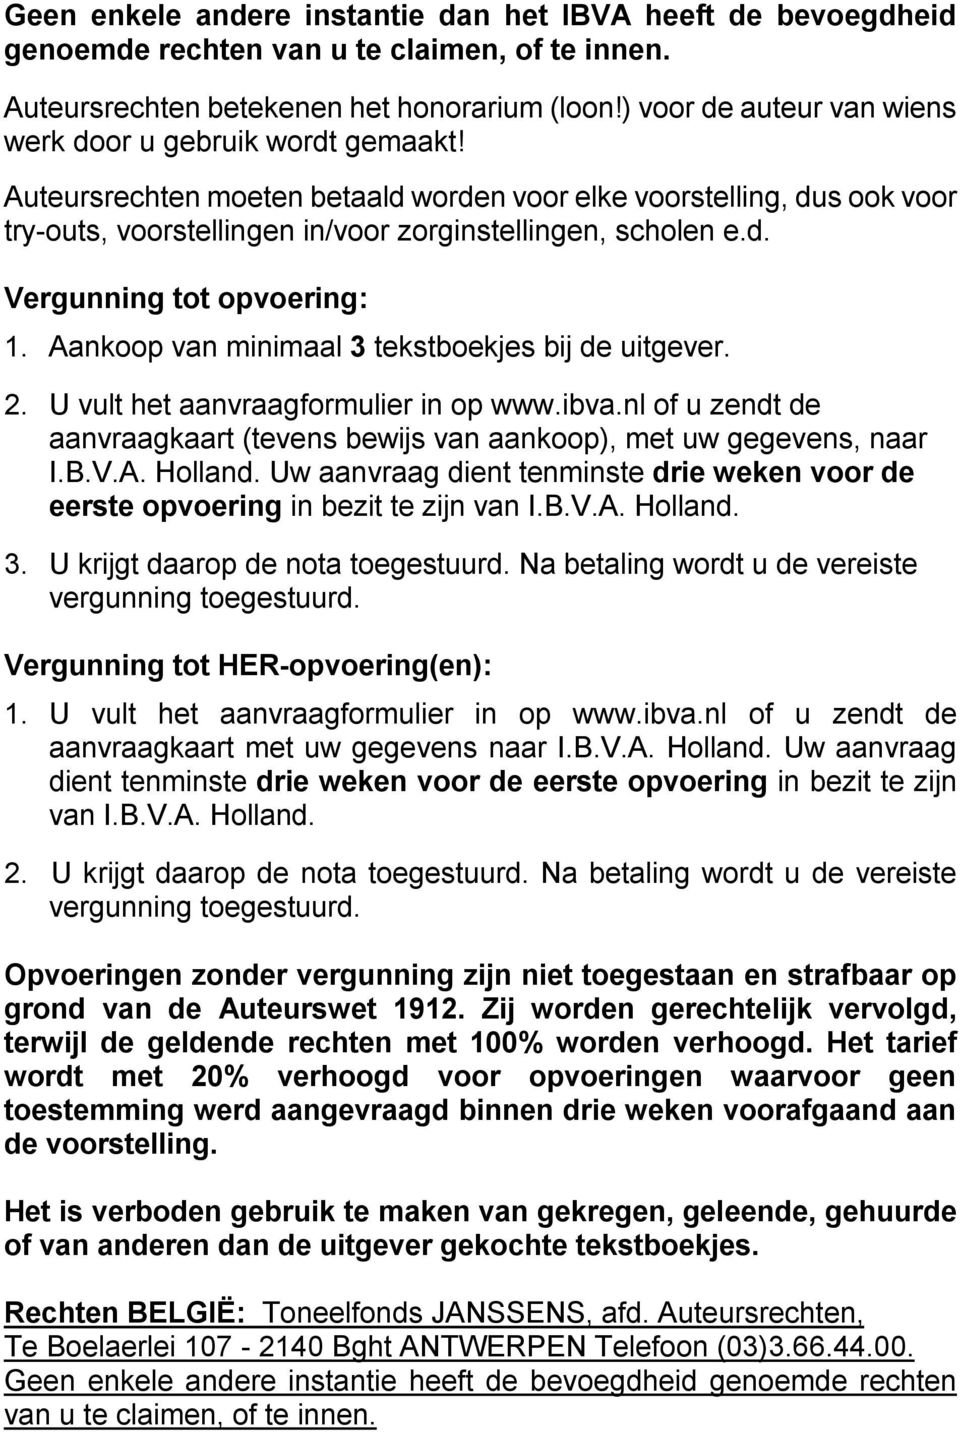 Aankoop van minimaal 3 tekstboekjes bij de uitgever. 2. U vult het aanvraagformulier in op www.ibva.nl of u zendt de aanvraagkaart (tevens bewijs van aankoop), met uw gegevens, naar I.B.V.A. Holland.